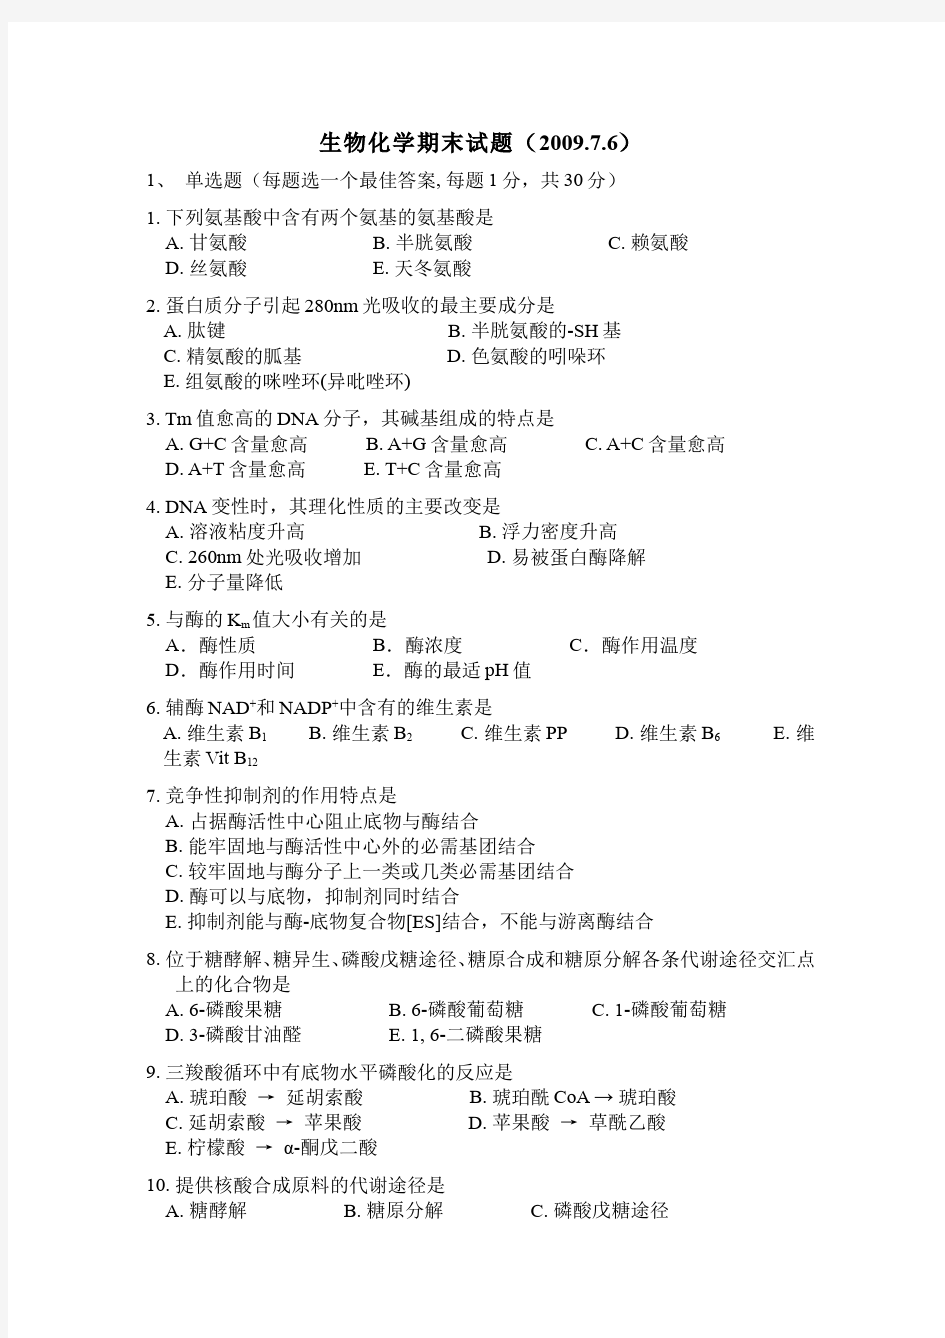 生物化学__北京大学(1)--期末考试试卷以及答案